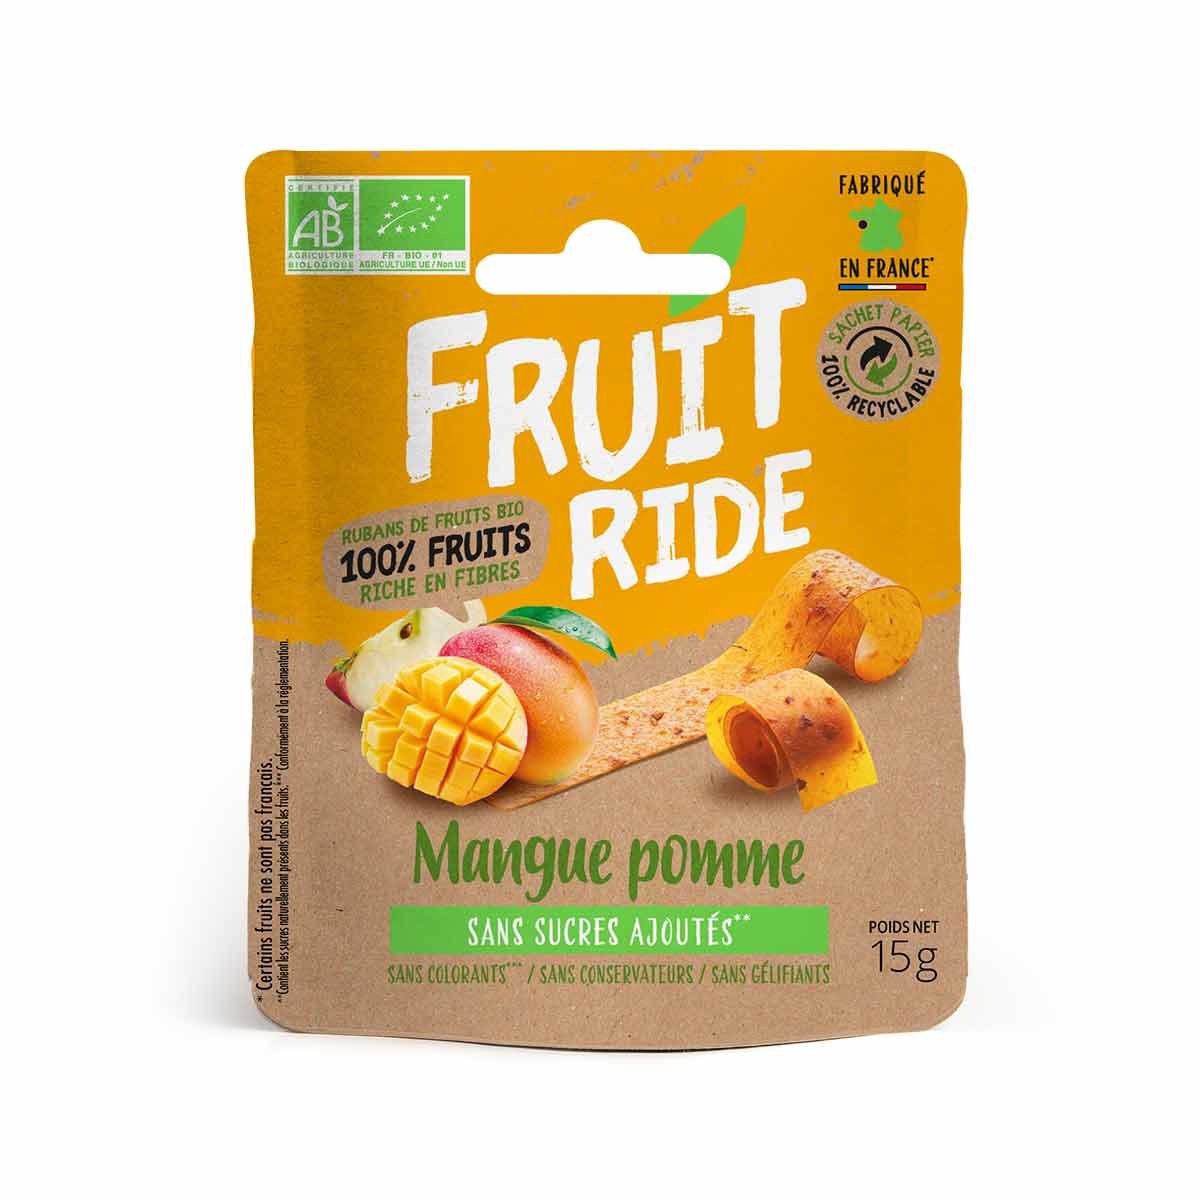 Cuirs de fruits bio Fruit Ride - Mangue, pomme